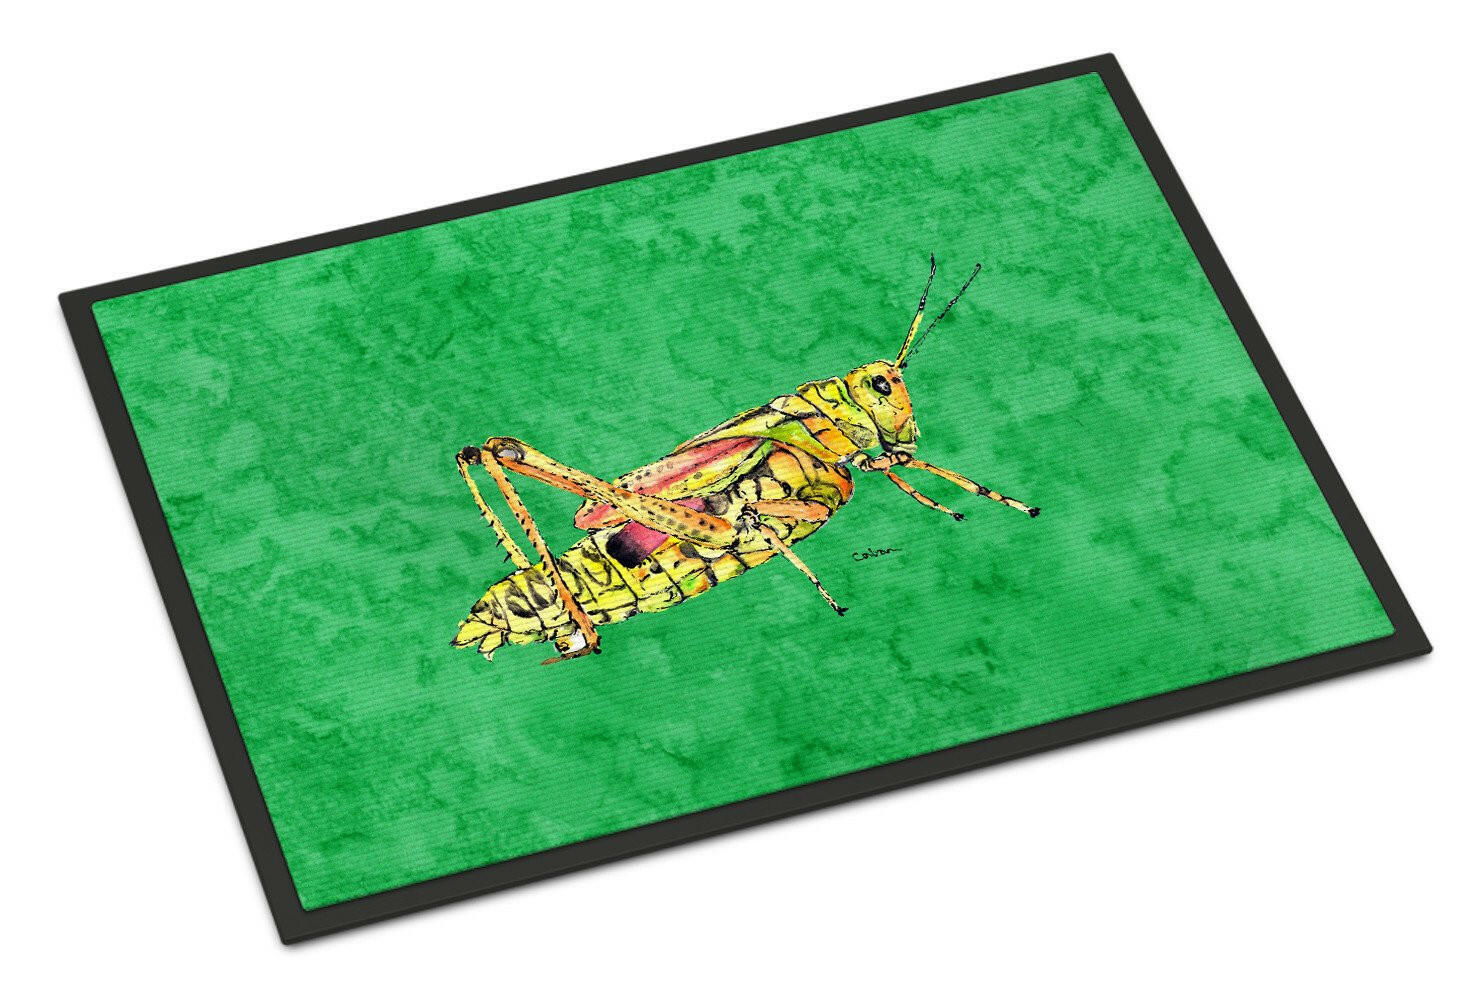 Grasshopper on Green Indoor or Outdoor Mat 18x27 Doormat - the-store.com